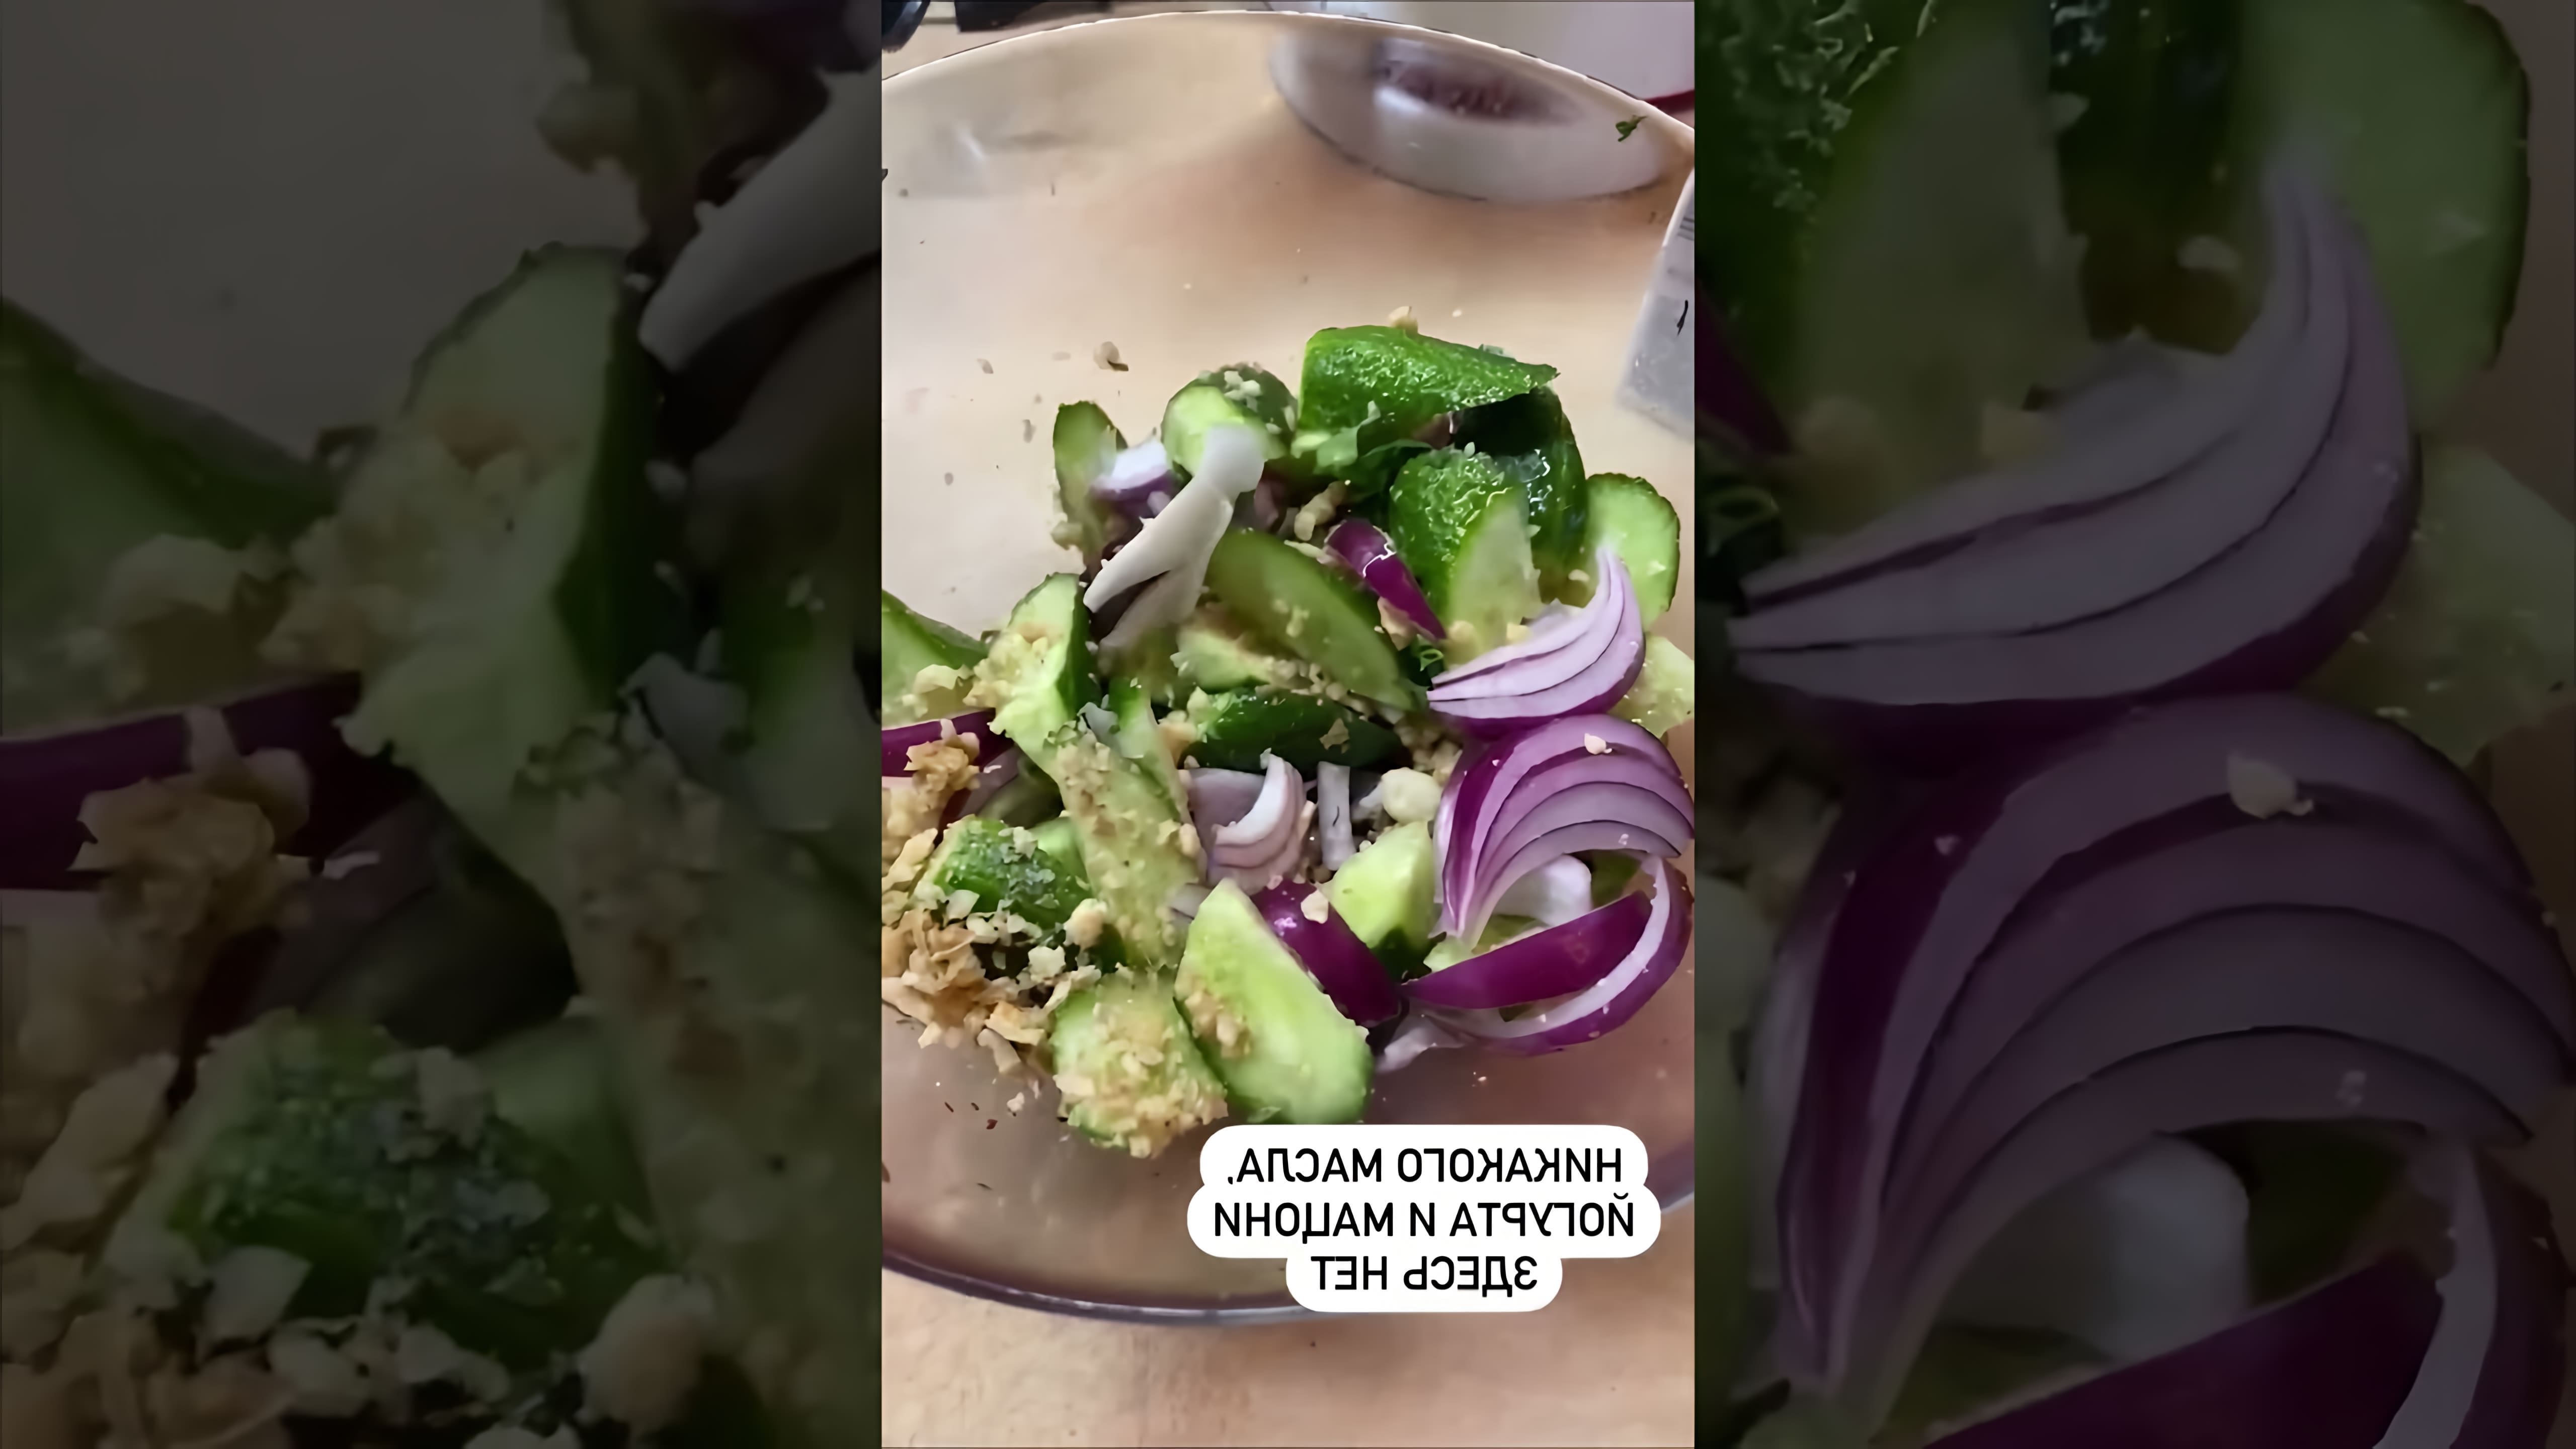 В этом видео-ролике мы увидим, как приготовить грузинский салат, используя овощи, маринад и соус